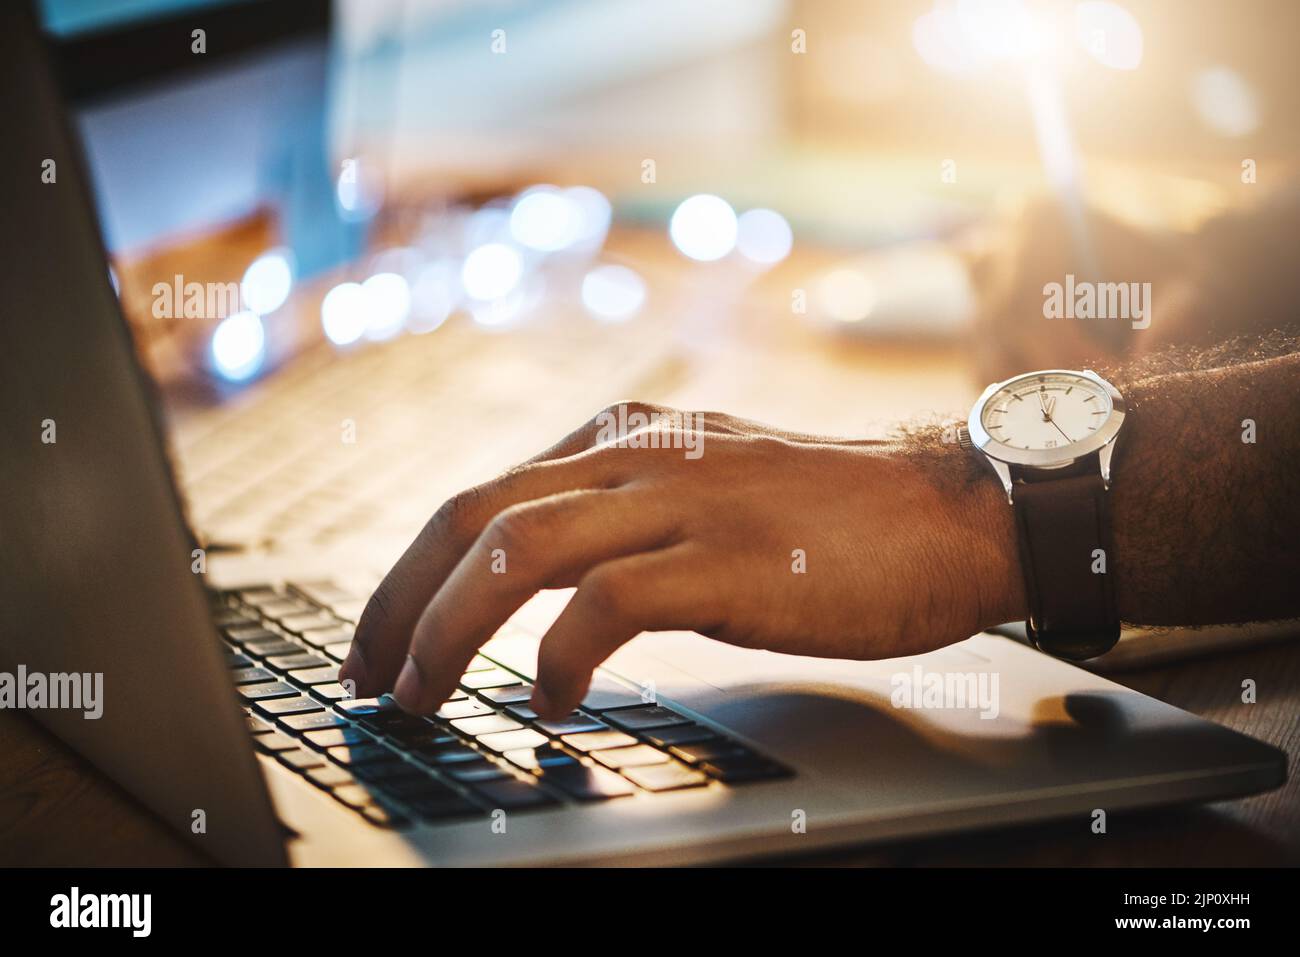 Le travail dur est toujours la solution. Un homme d'affaires utilisant un ordinateur portable pendant une nuit de travail. Banque D'Images